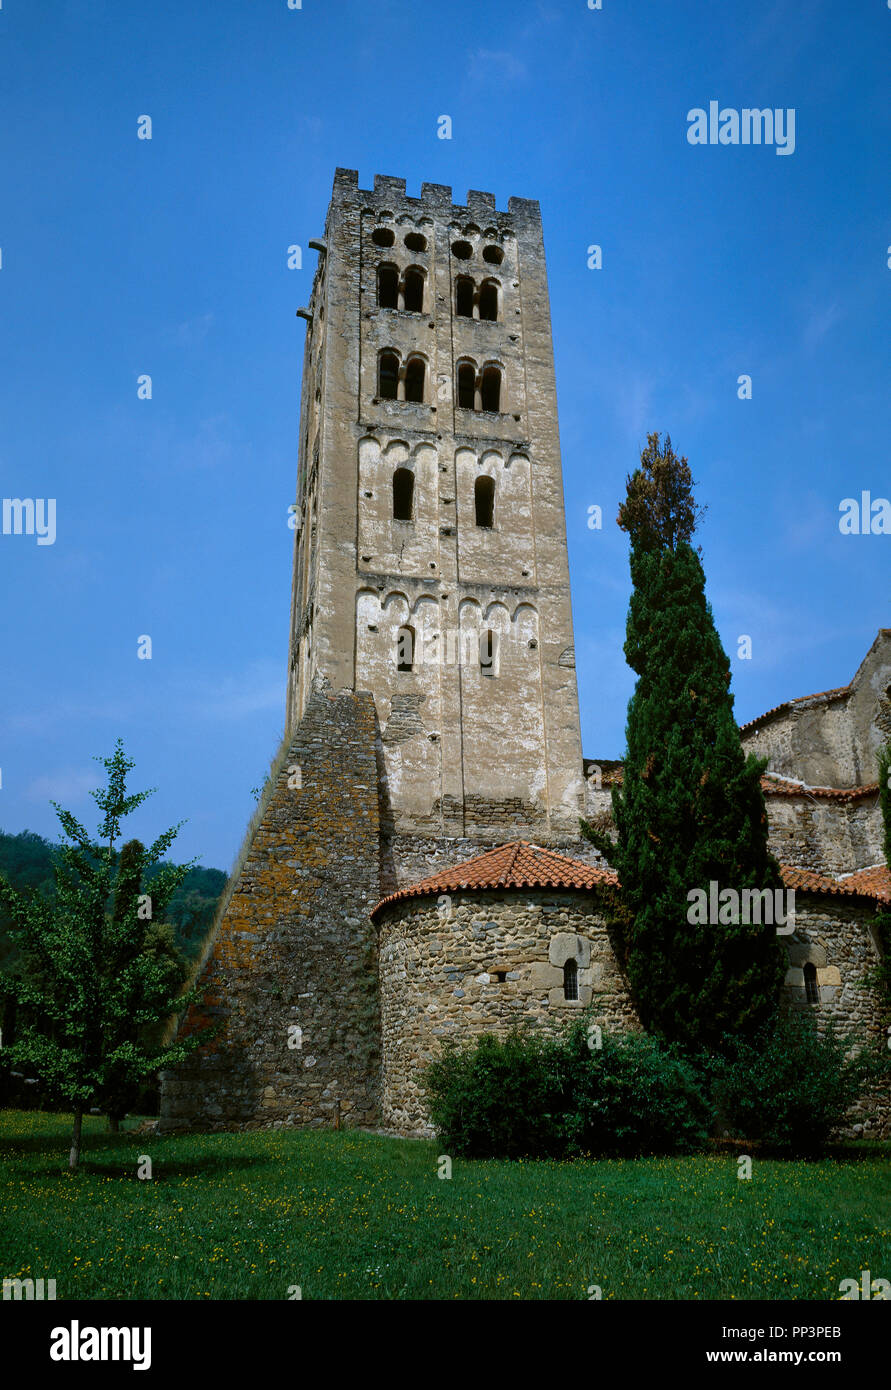 Frankreich. Pyrenees-Orientales Abteilung. Abtei von Saint-Michel de Cuxa. Benediktinerabtei. Romanische Glockenturm, lombardischen Stil, aus dem 11. Jahrhundert. Einzelnen Windows in den beiden unteren Etagen und in den beiden oberen Etagen. Die stützpfeiler ist im 14. Jahrhundert. Stockfoto